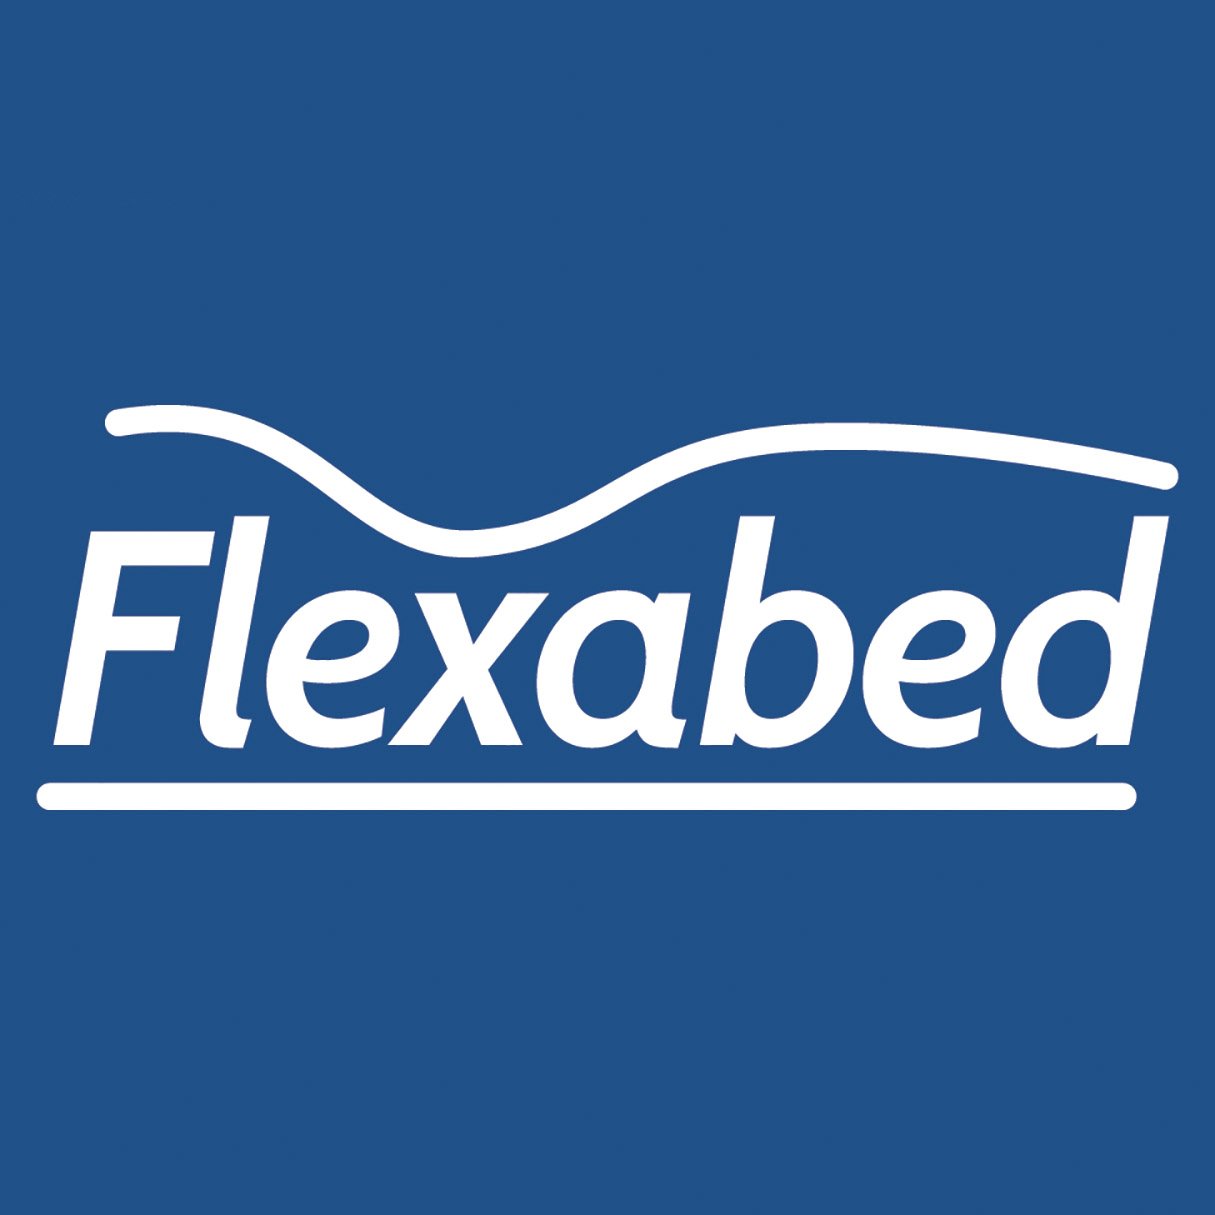 flex-a-bed